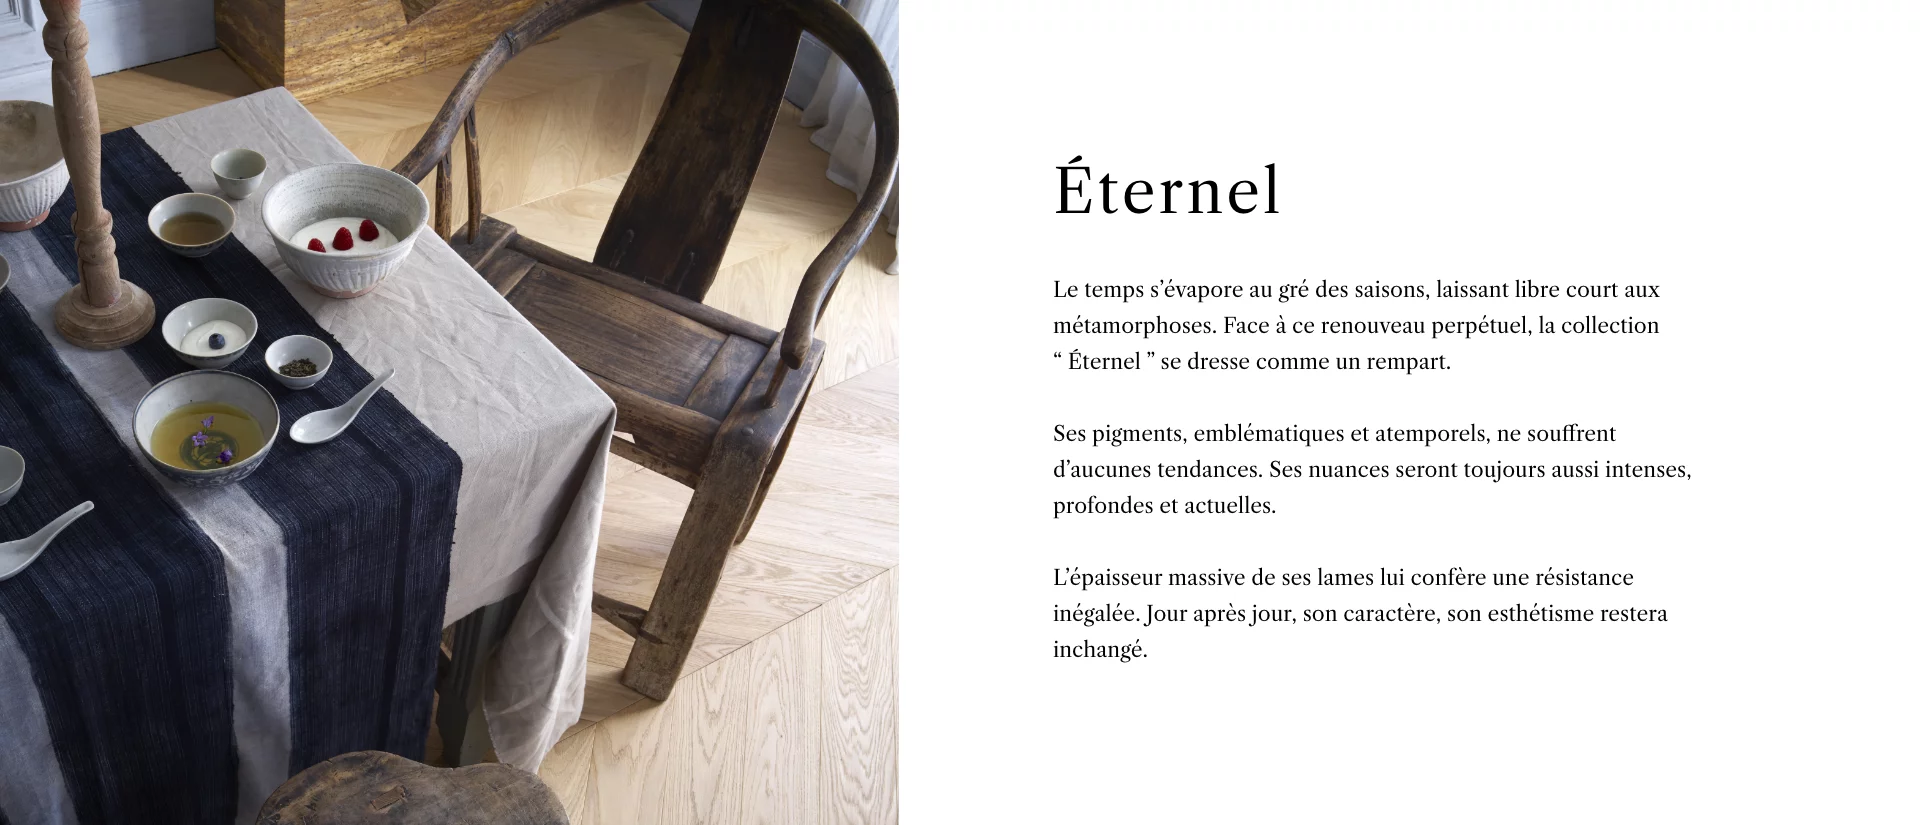 Collection Eternel - Description